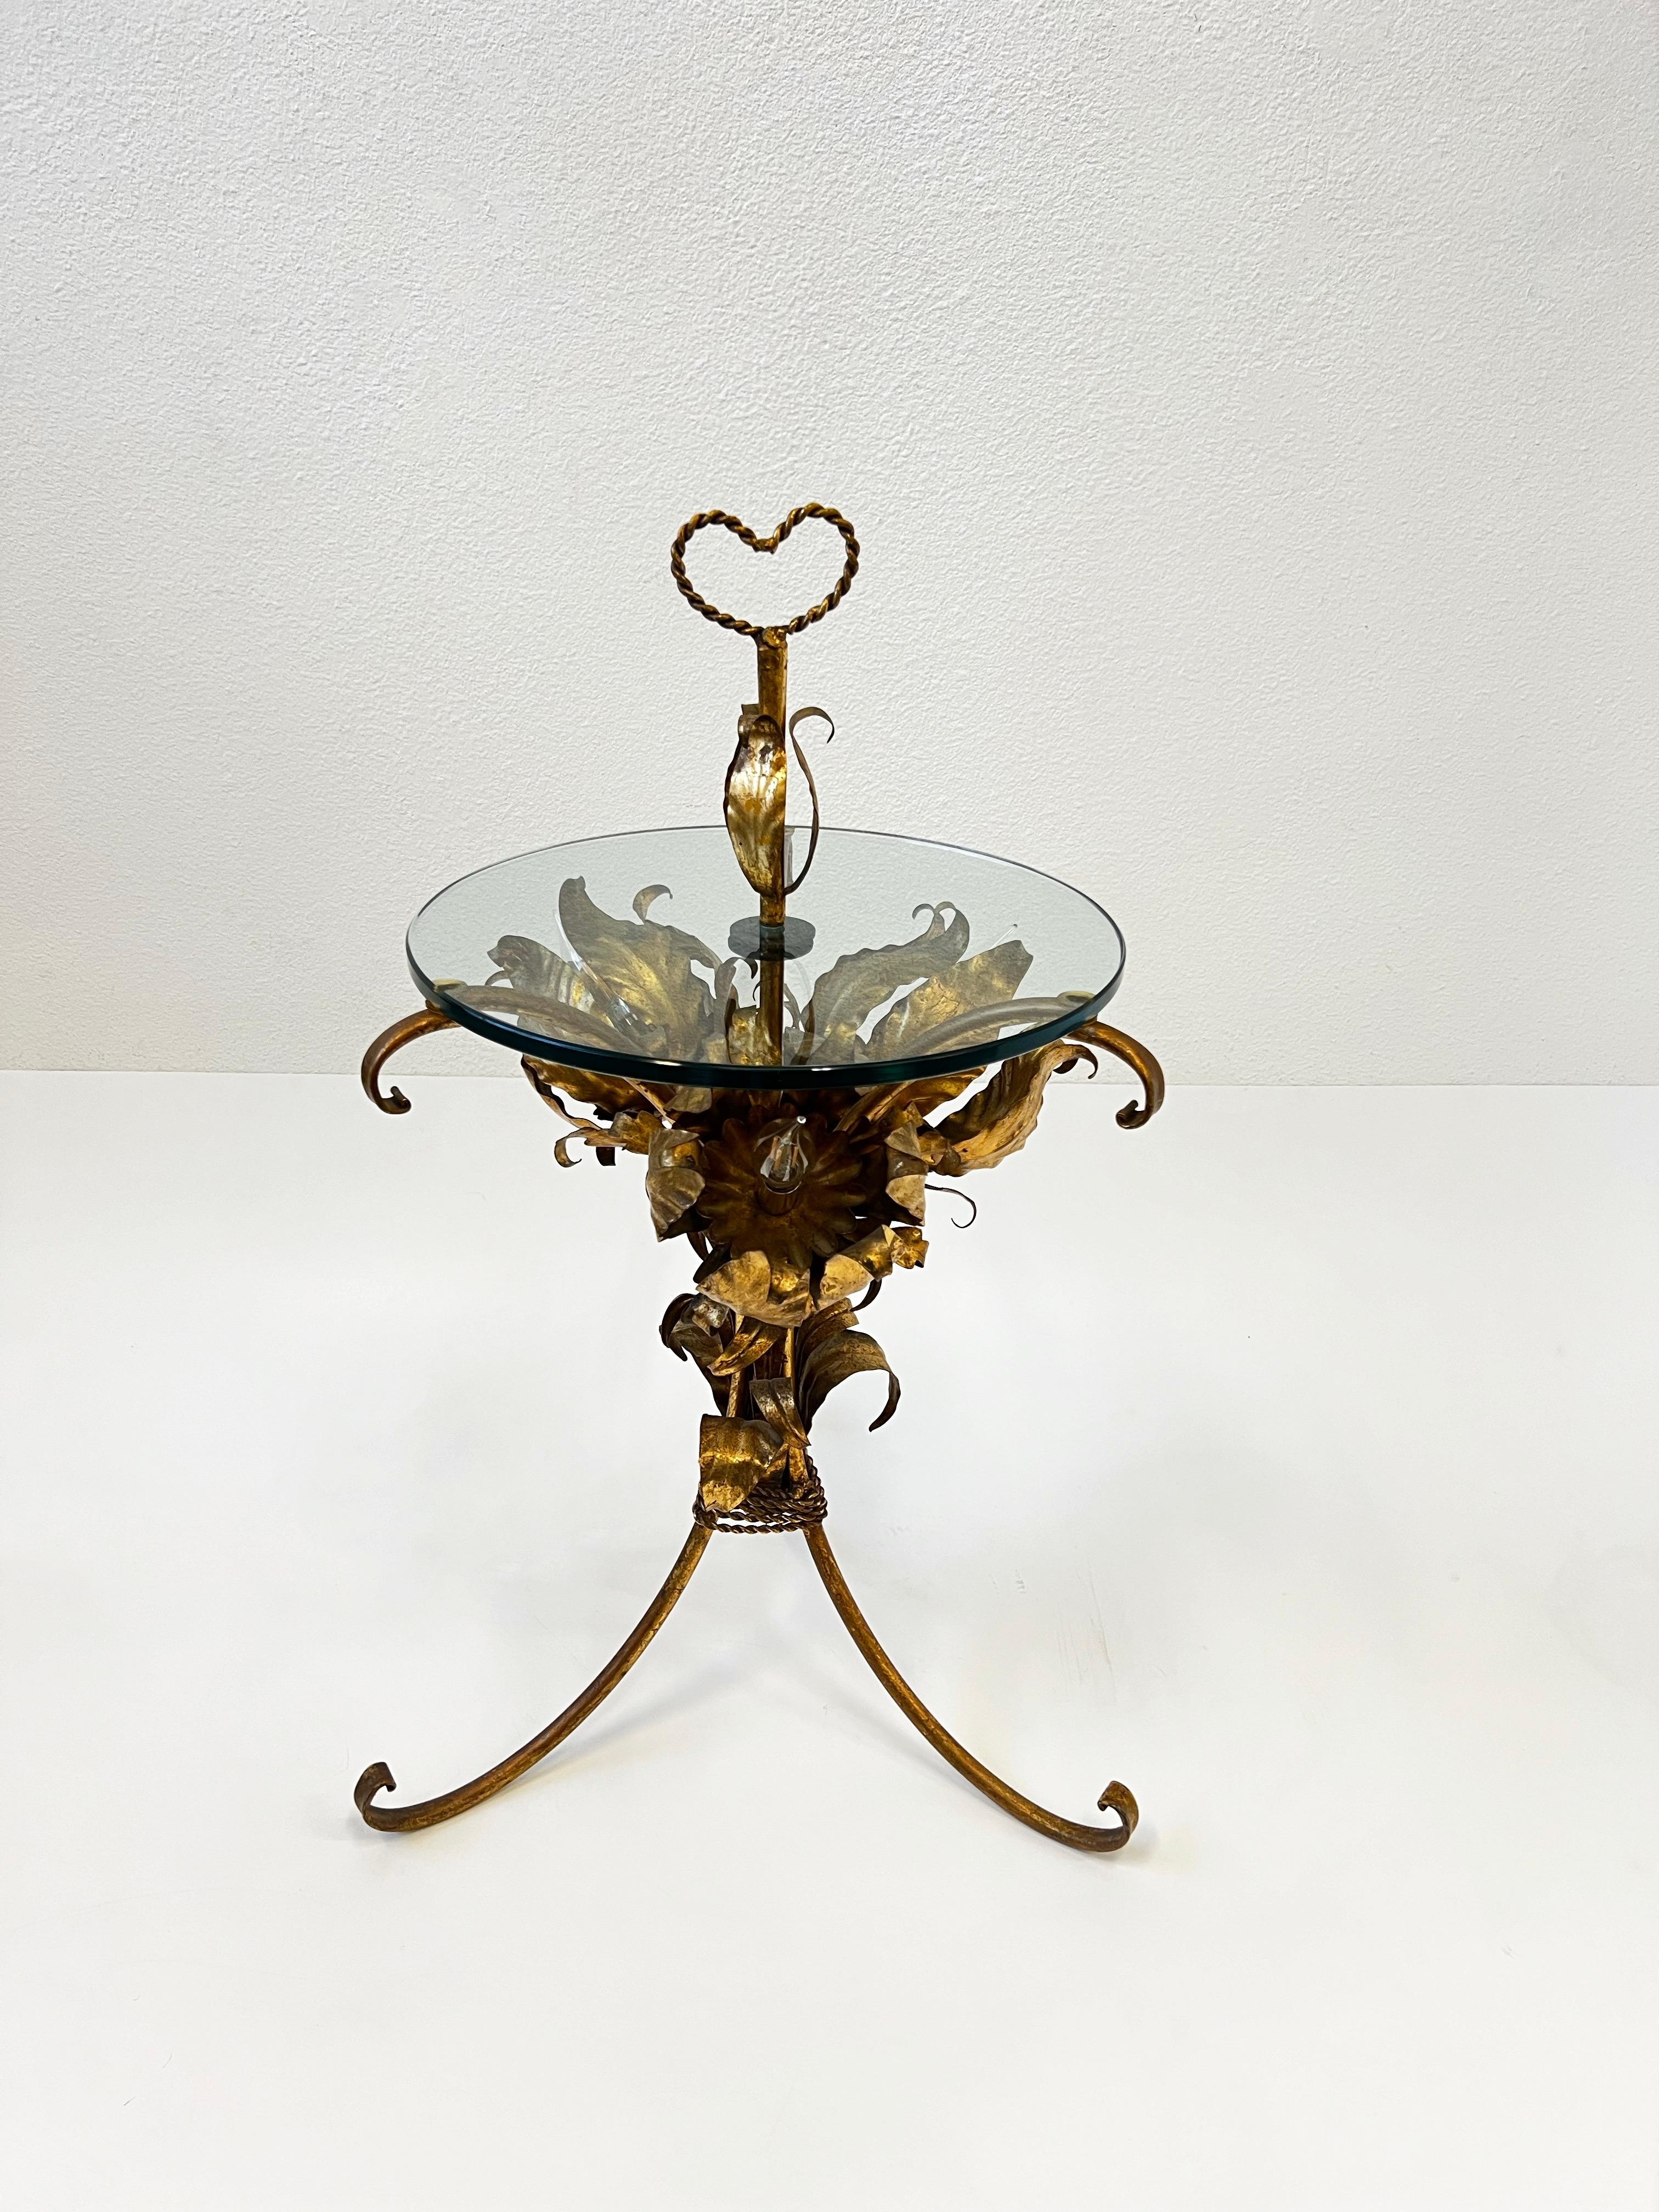 1970 Italian Gilded flower light side table by Hans Kögl. 
Le cadre et le verre sont dans leur état d'origine. L'étiquette métallique Maid in Italy est conservée. Présente une légère usure due à l'âge. Nouvellement recâblé. 

Dimensions : 21